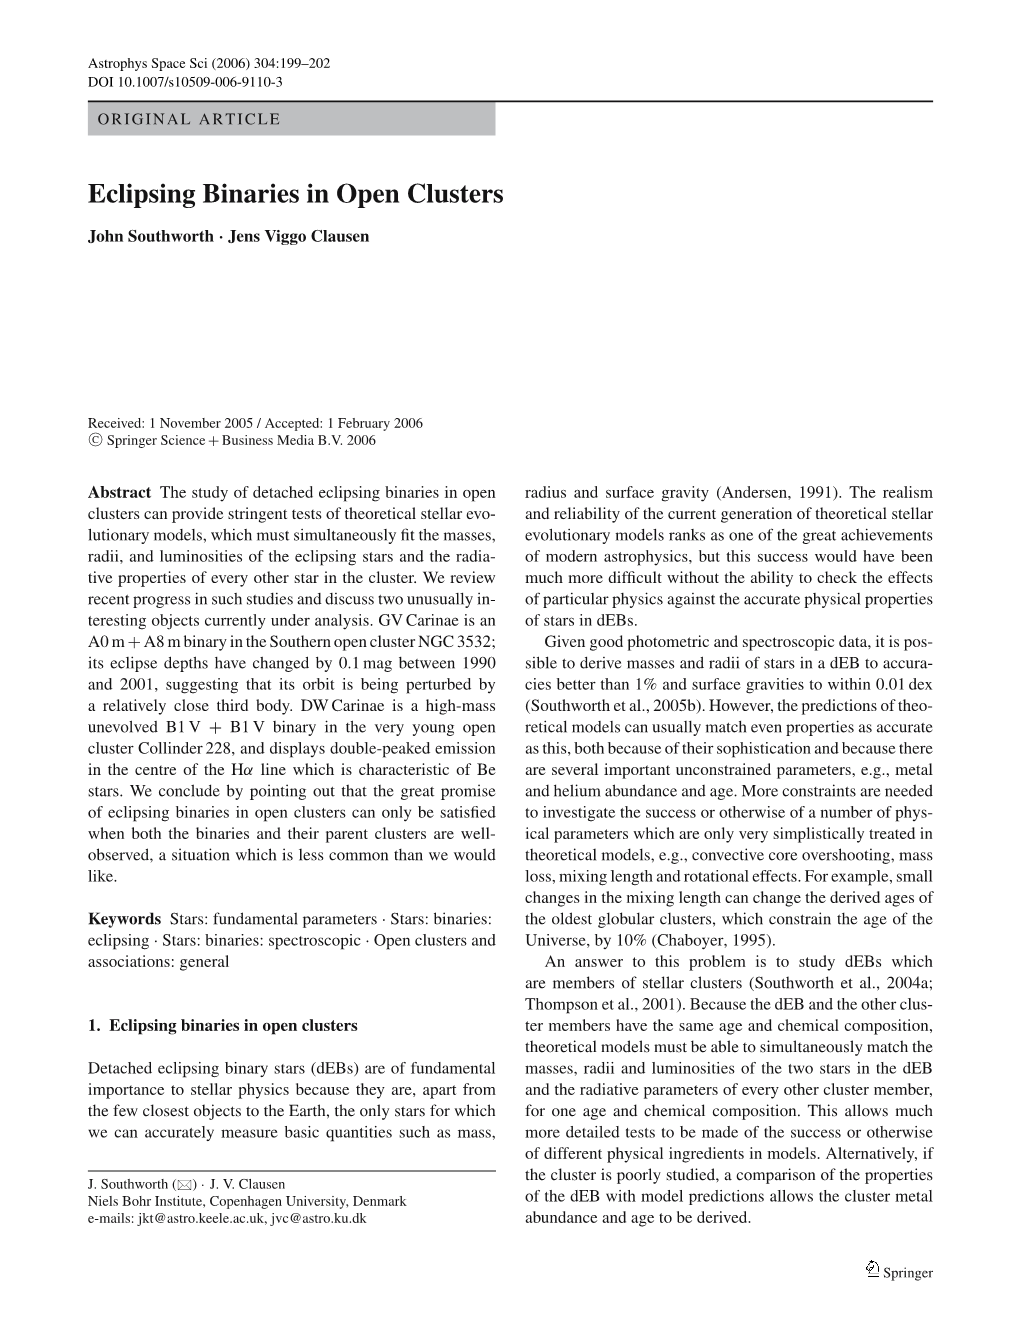 Eclipsing Binaries in Open Clusters